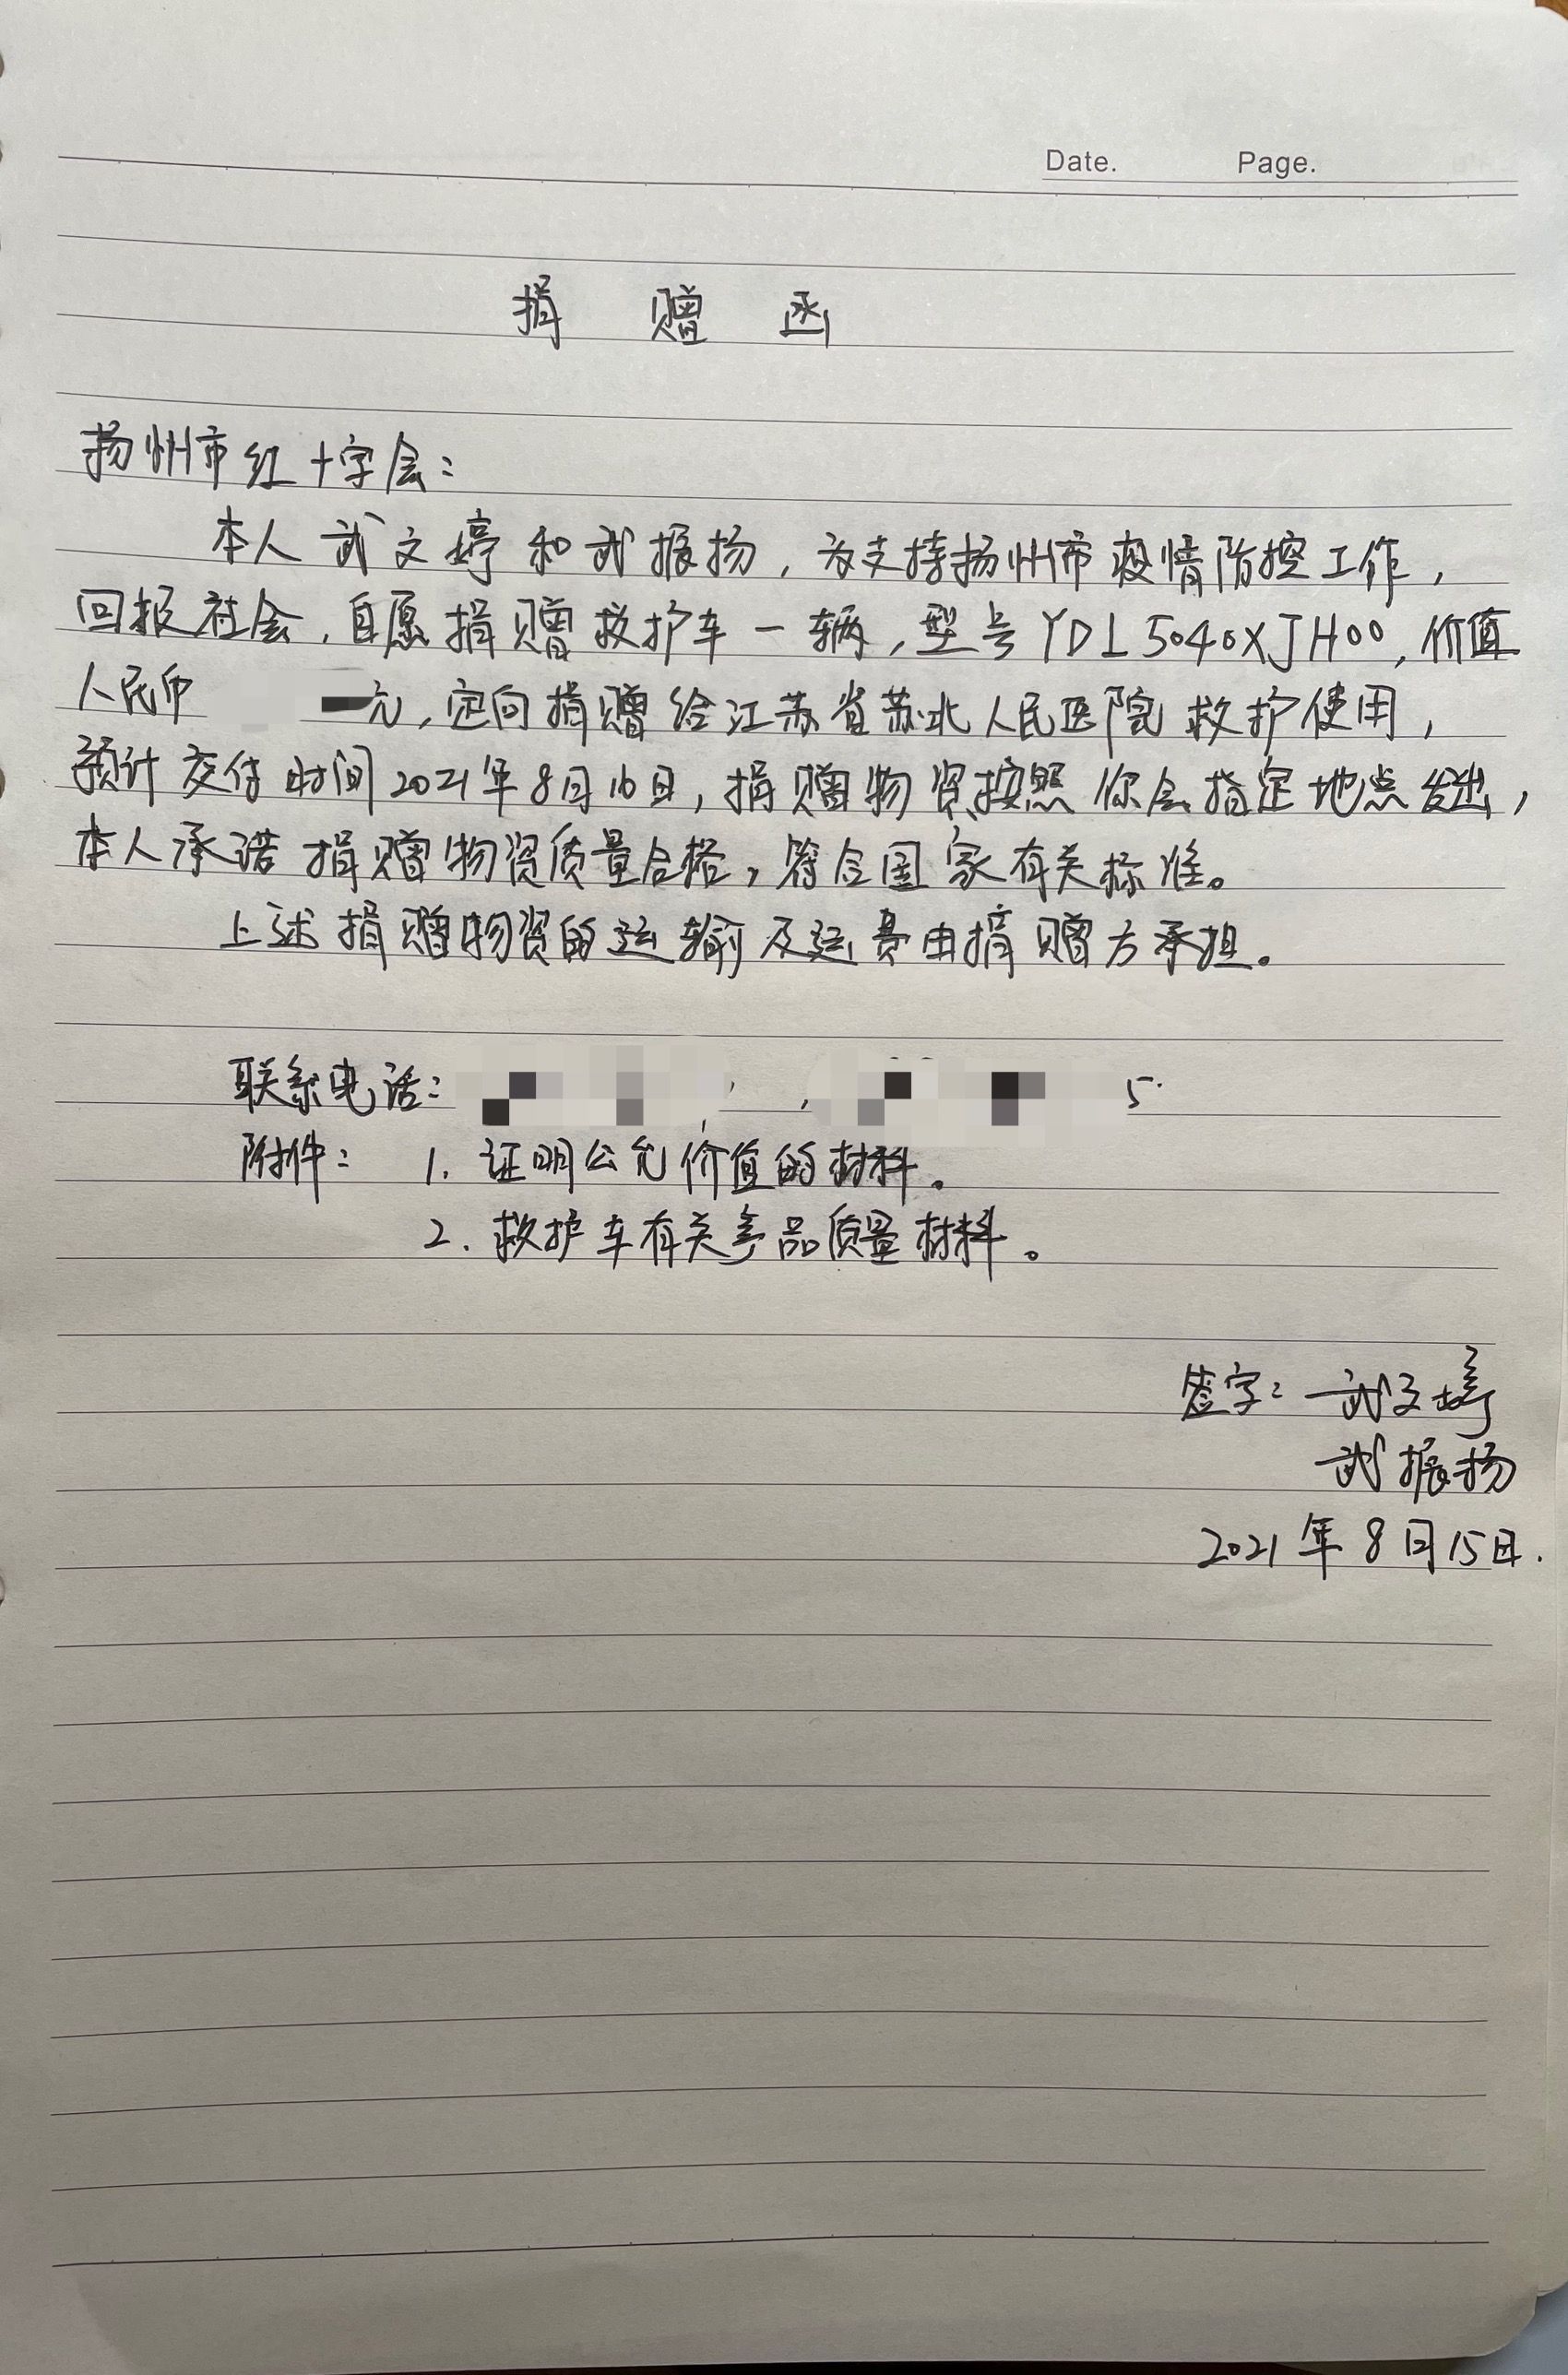 8月15日,武文婷写给扬州市红十字会的捐赠函受访者供图